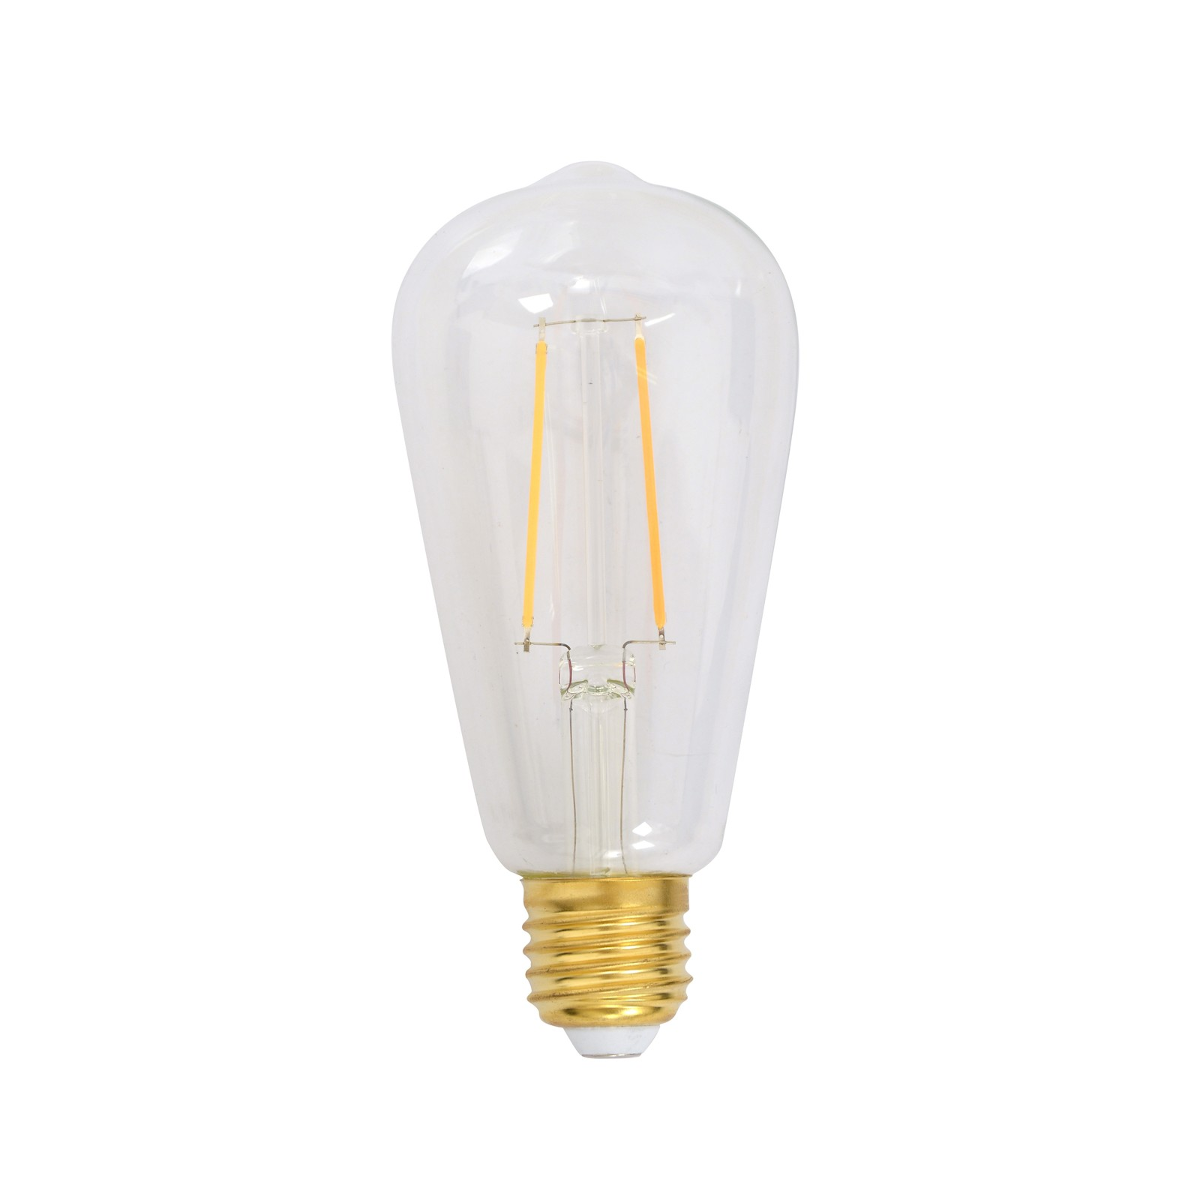 15013L ST64 Pear Shaped LED Lamp 4.6W